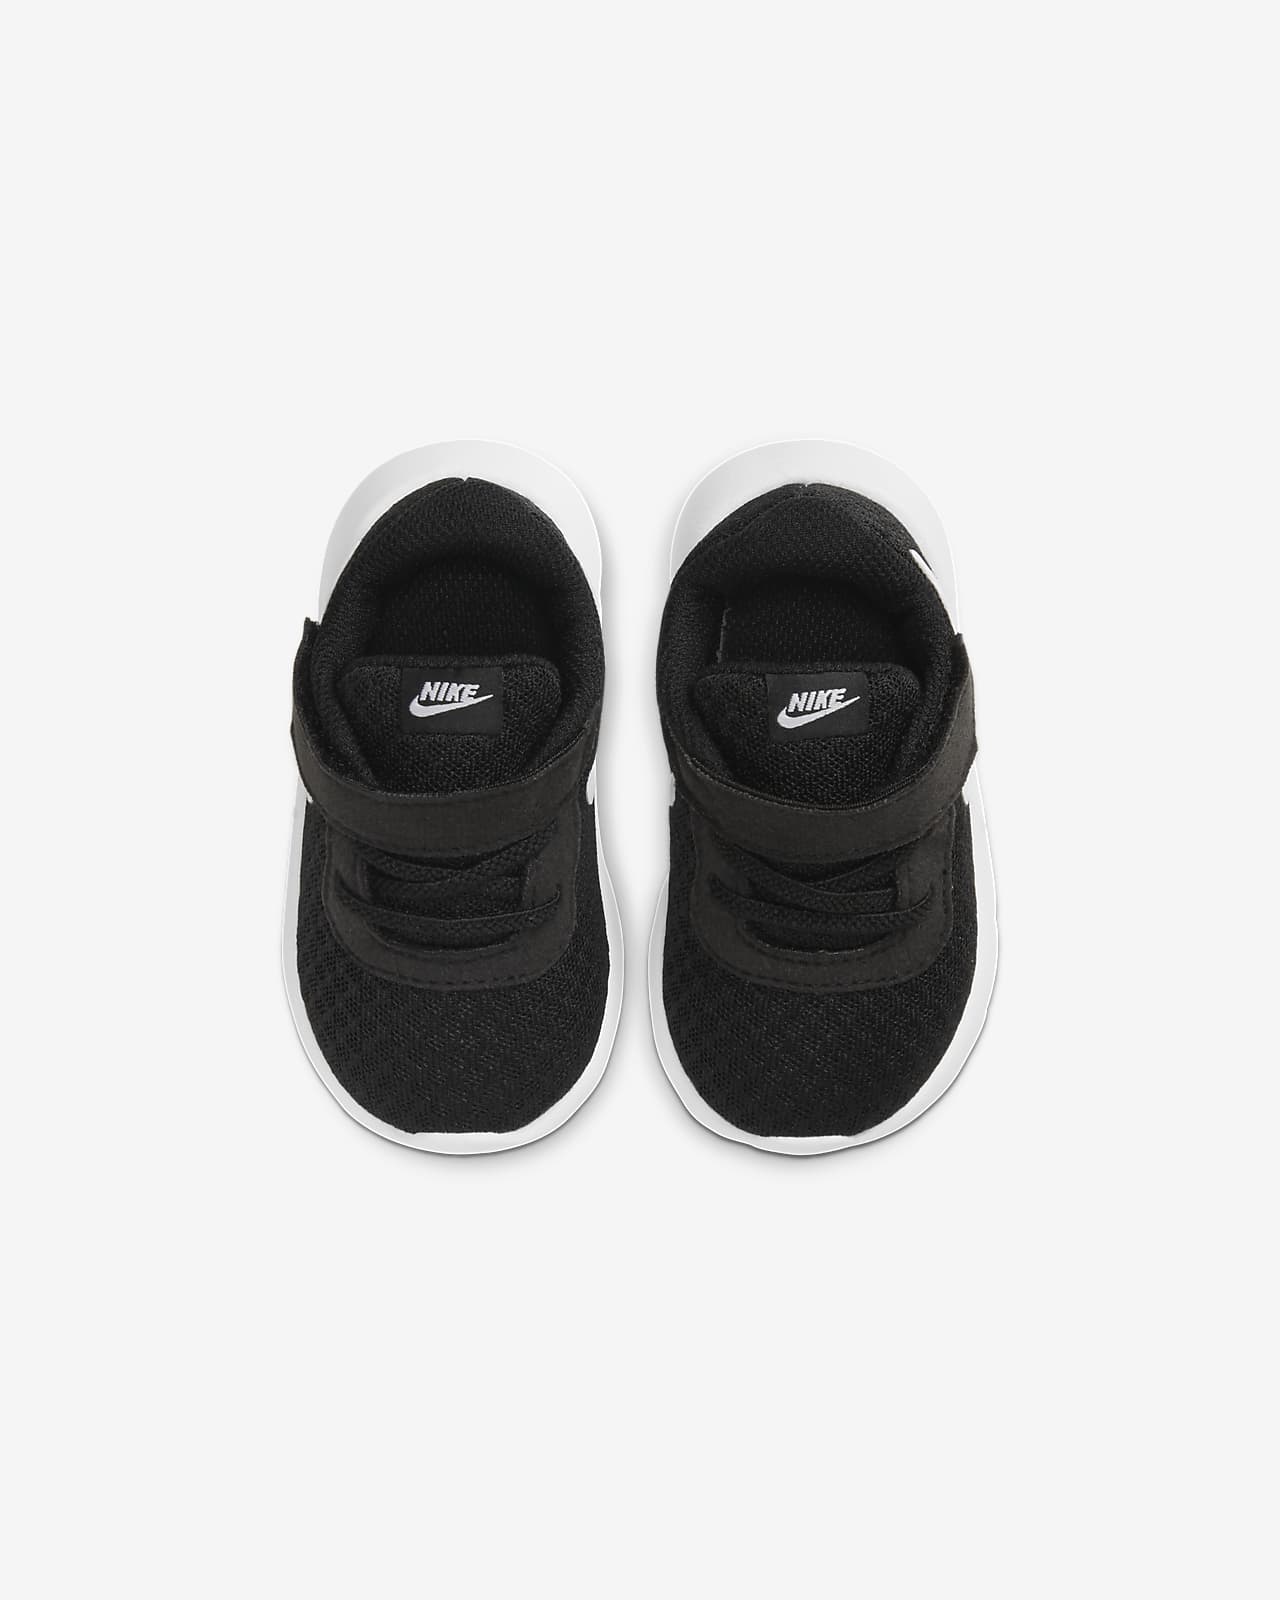 Nike Tanjun (2c-10c) Infant/Toddler 